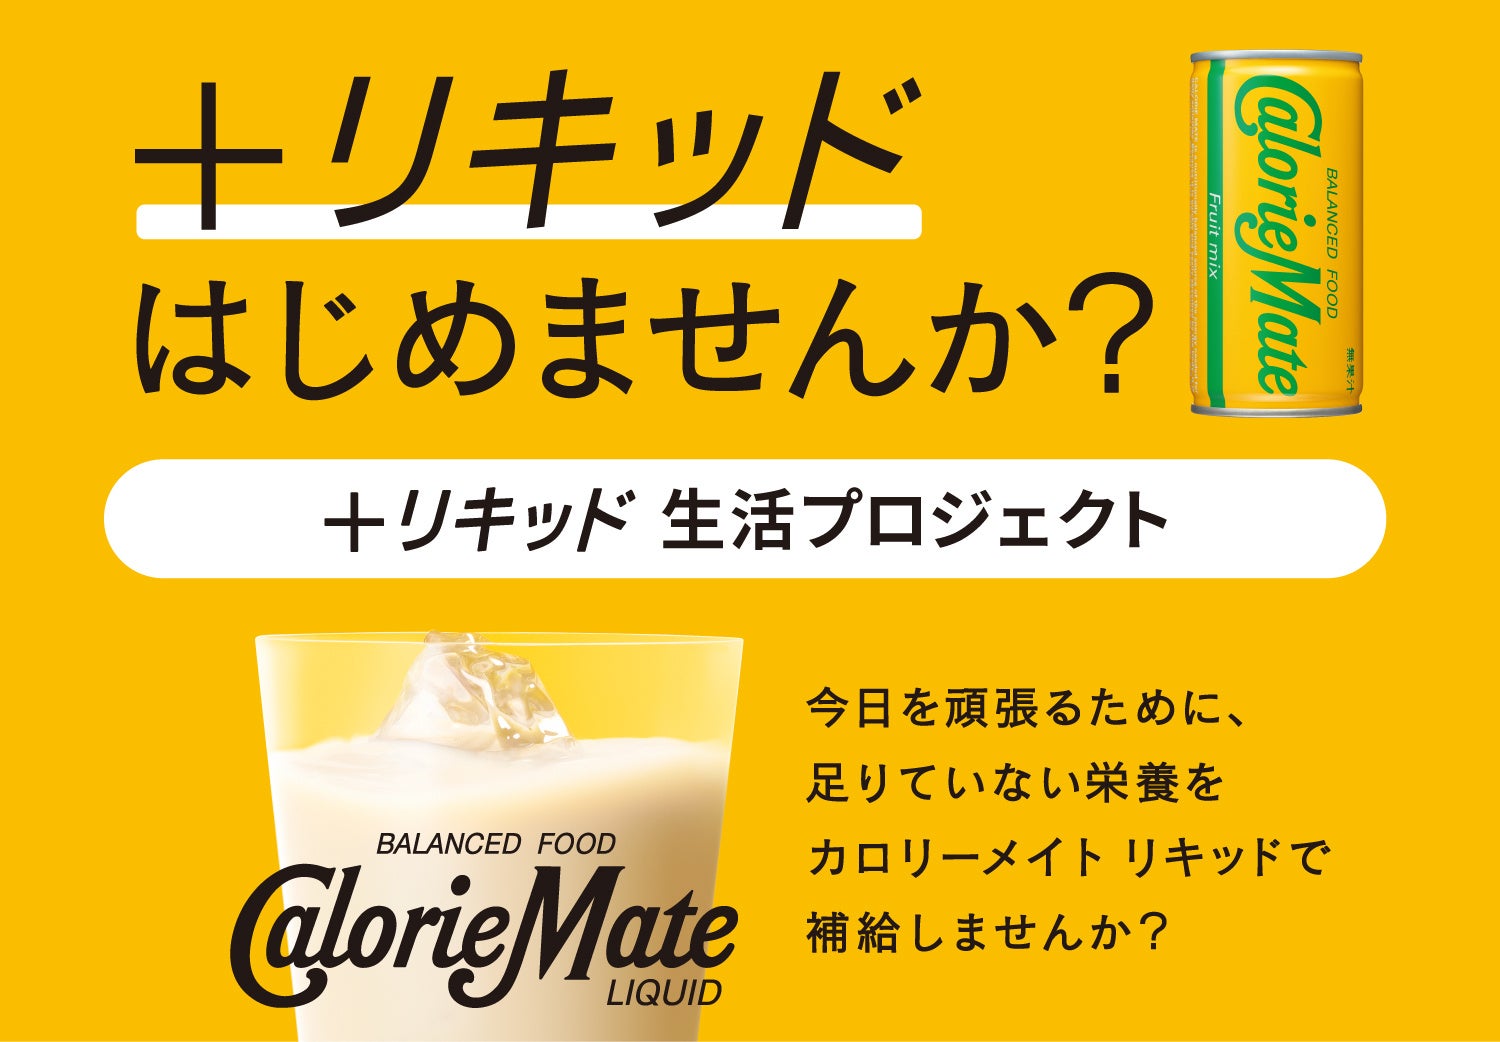 TVアニメ『ONE PIECE』×Cake.jpコラボ「ハンコック メロメロンケーキ缶」を7月10日より販売開始！